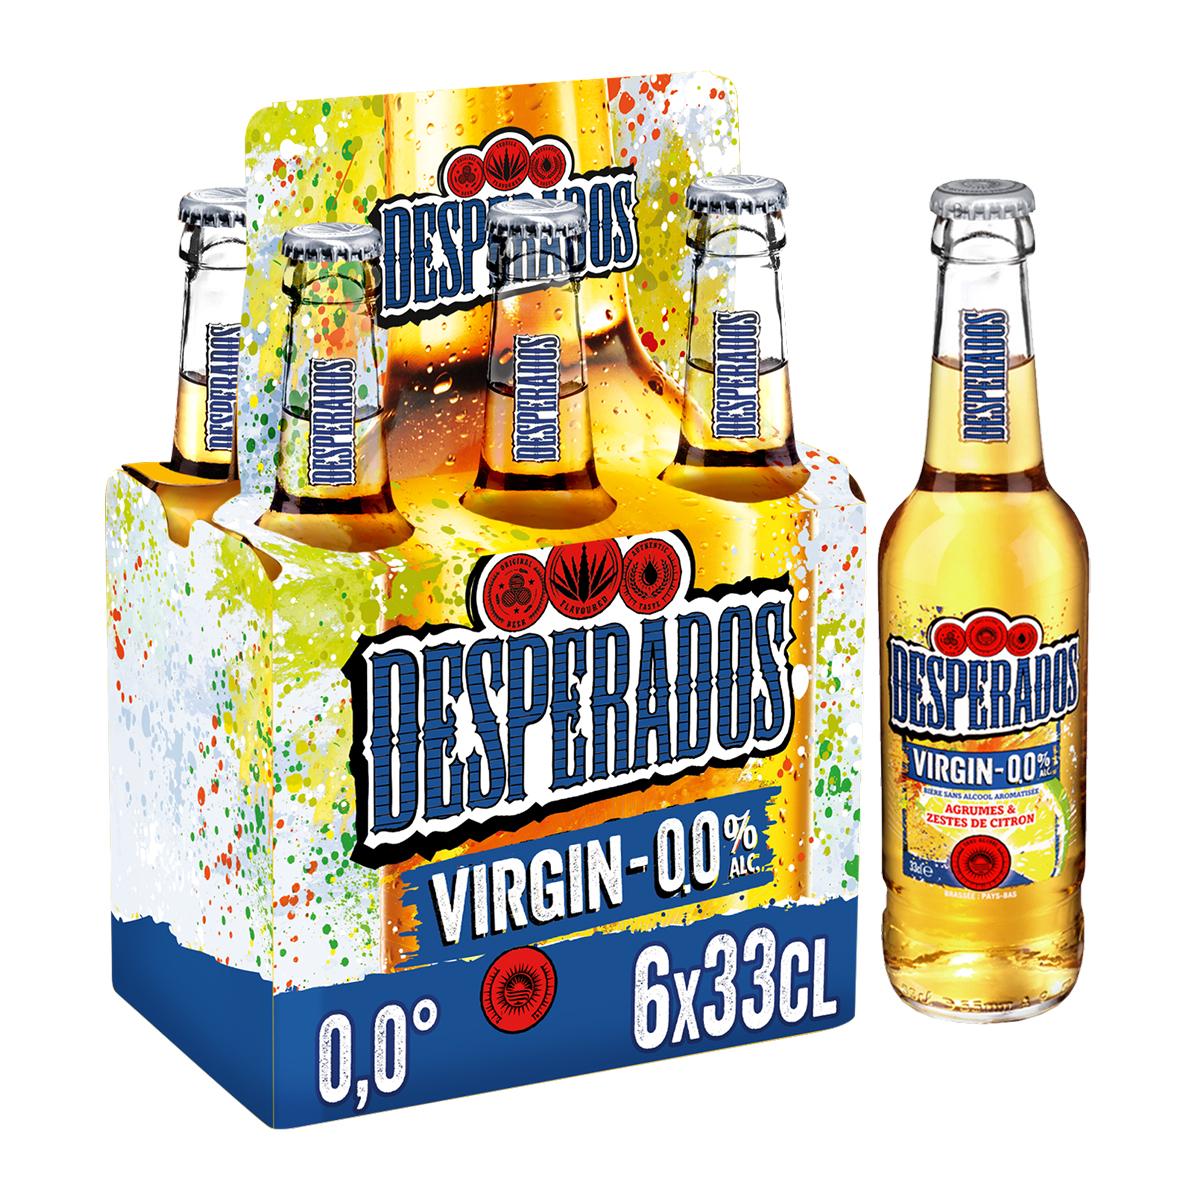 Achat Desperados Virgin Bière sans alcool aromatisée agrumes - citron